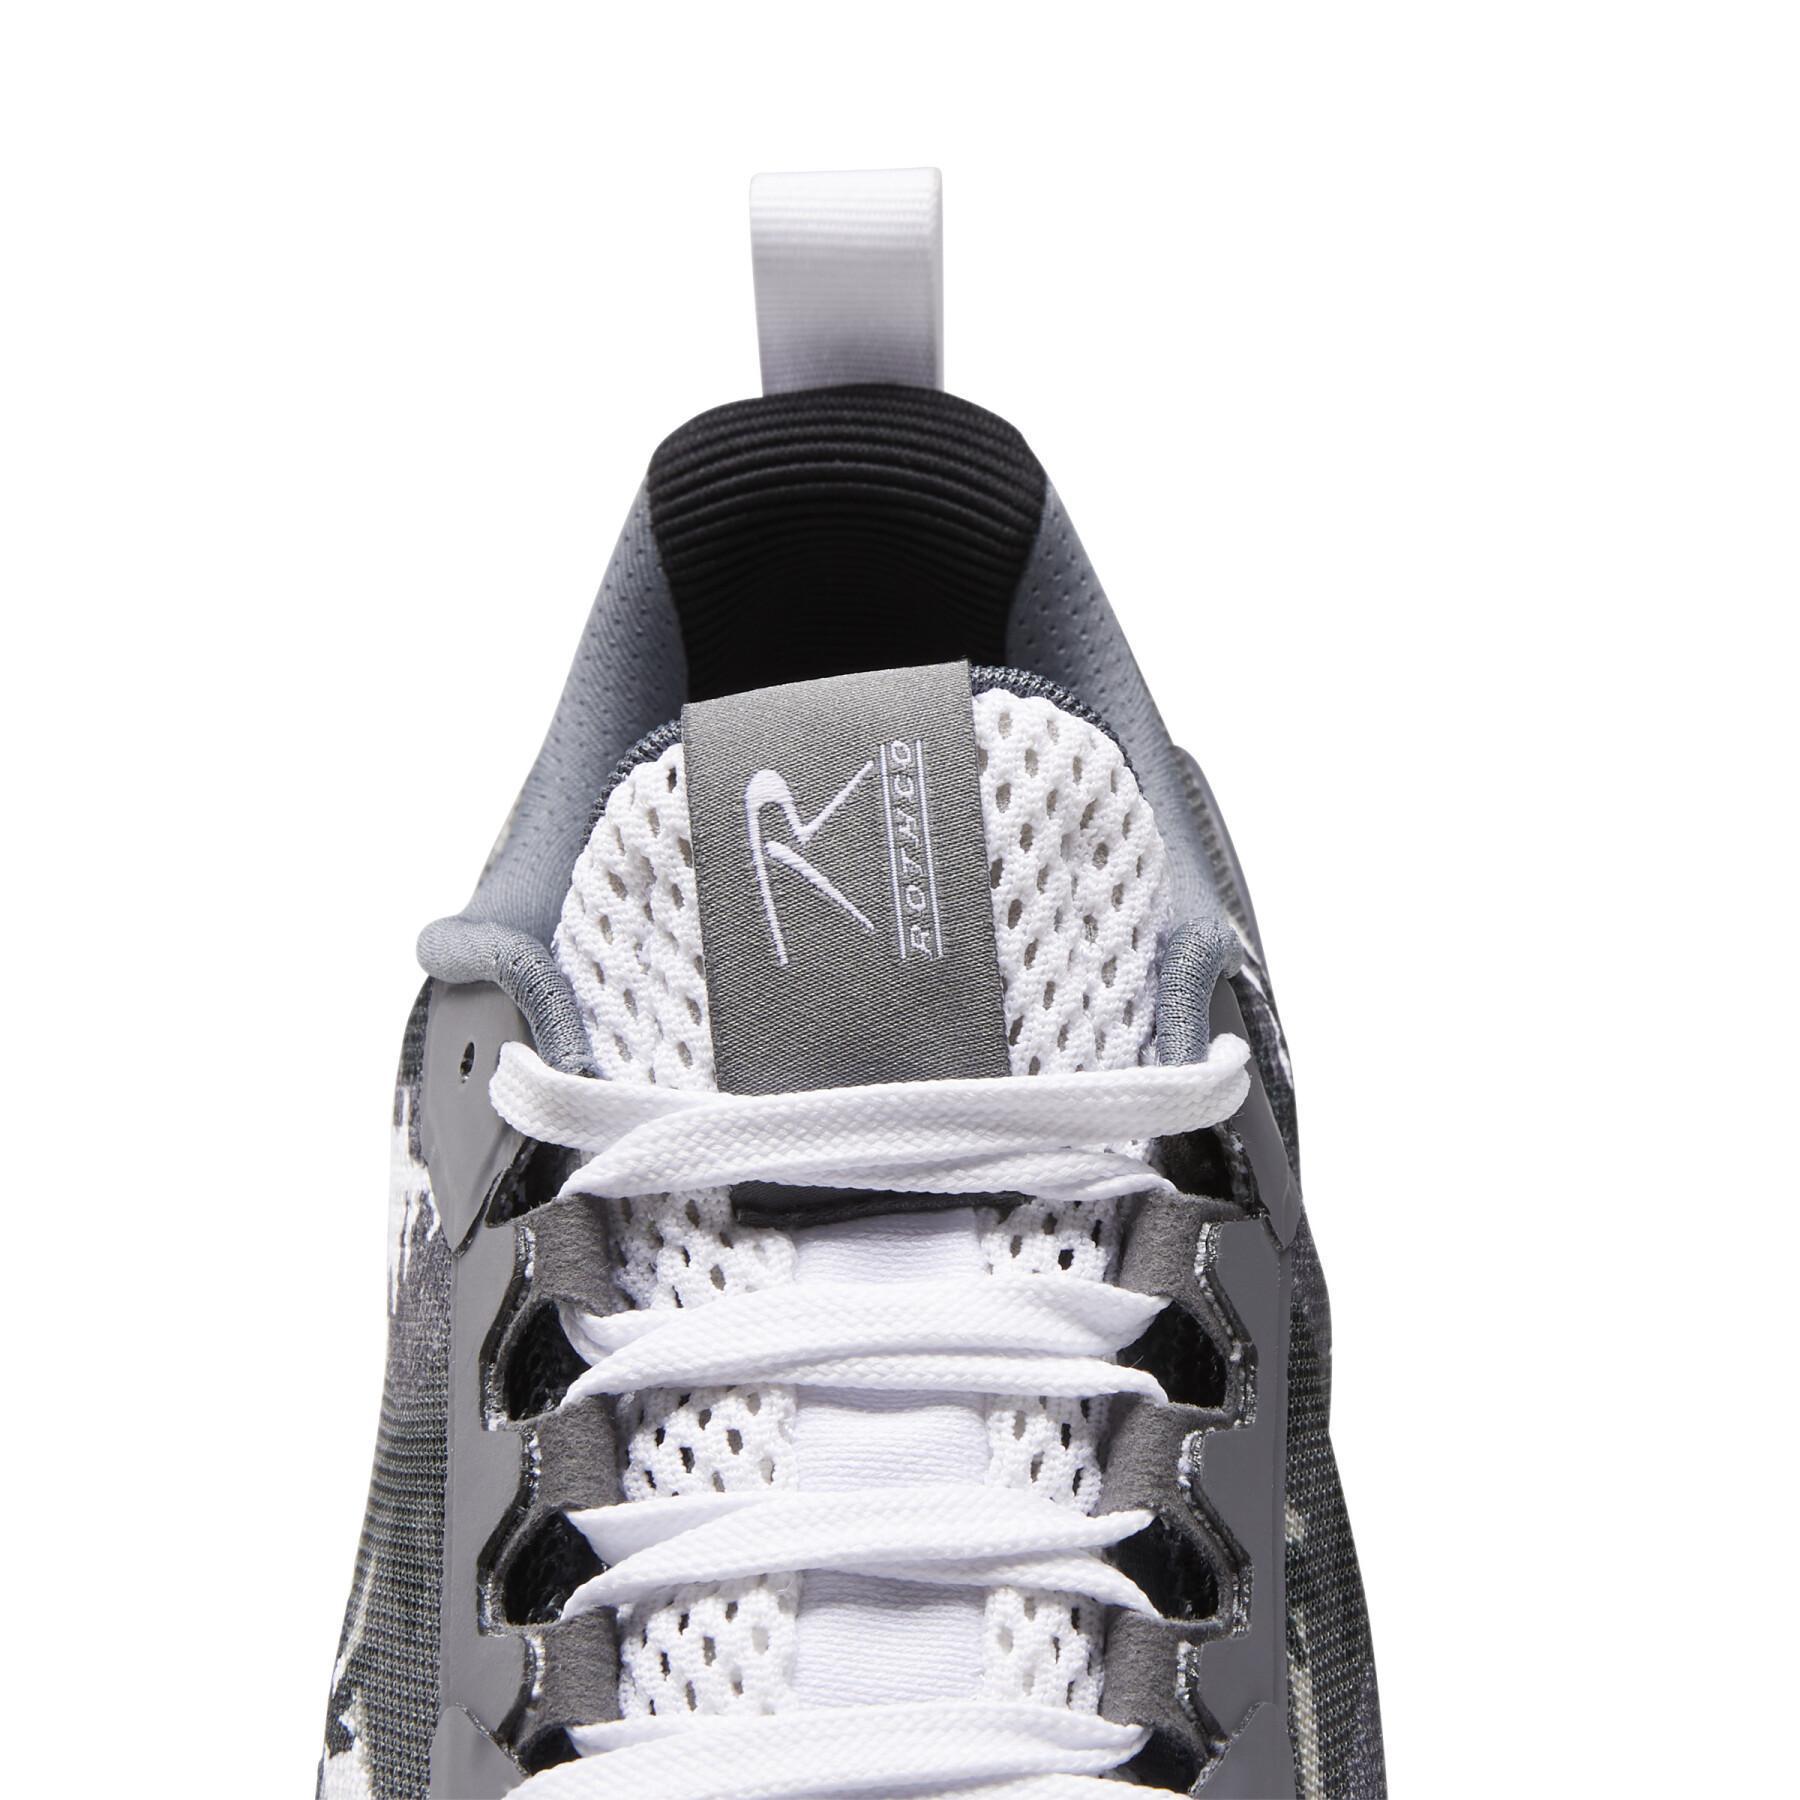 Schuhe Reebok Nano X1